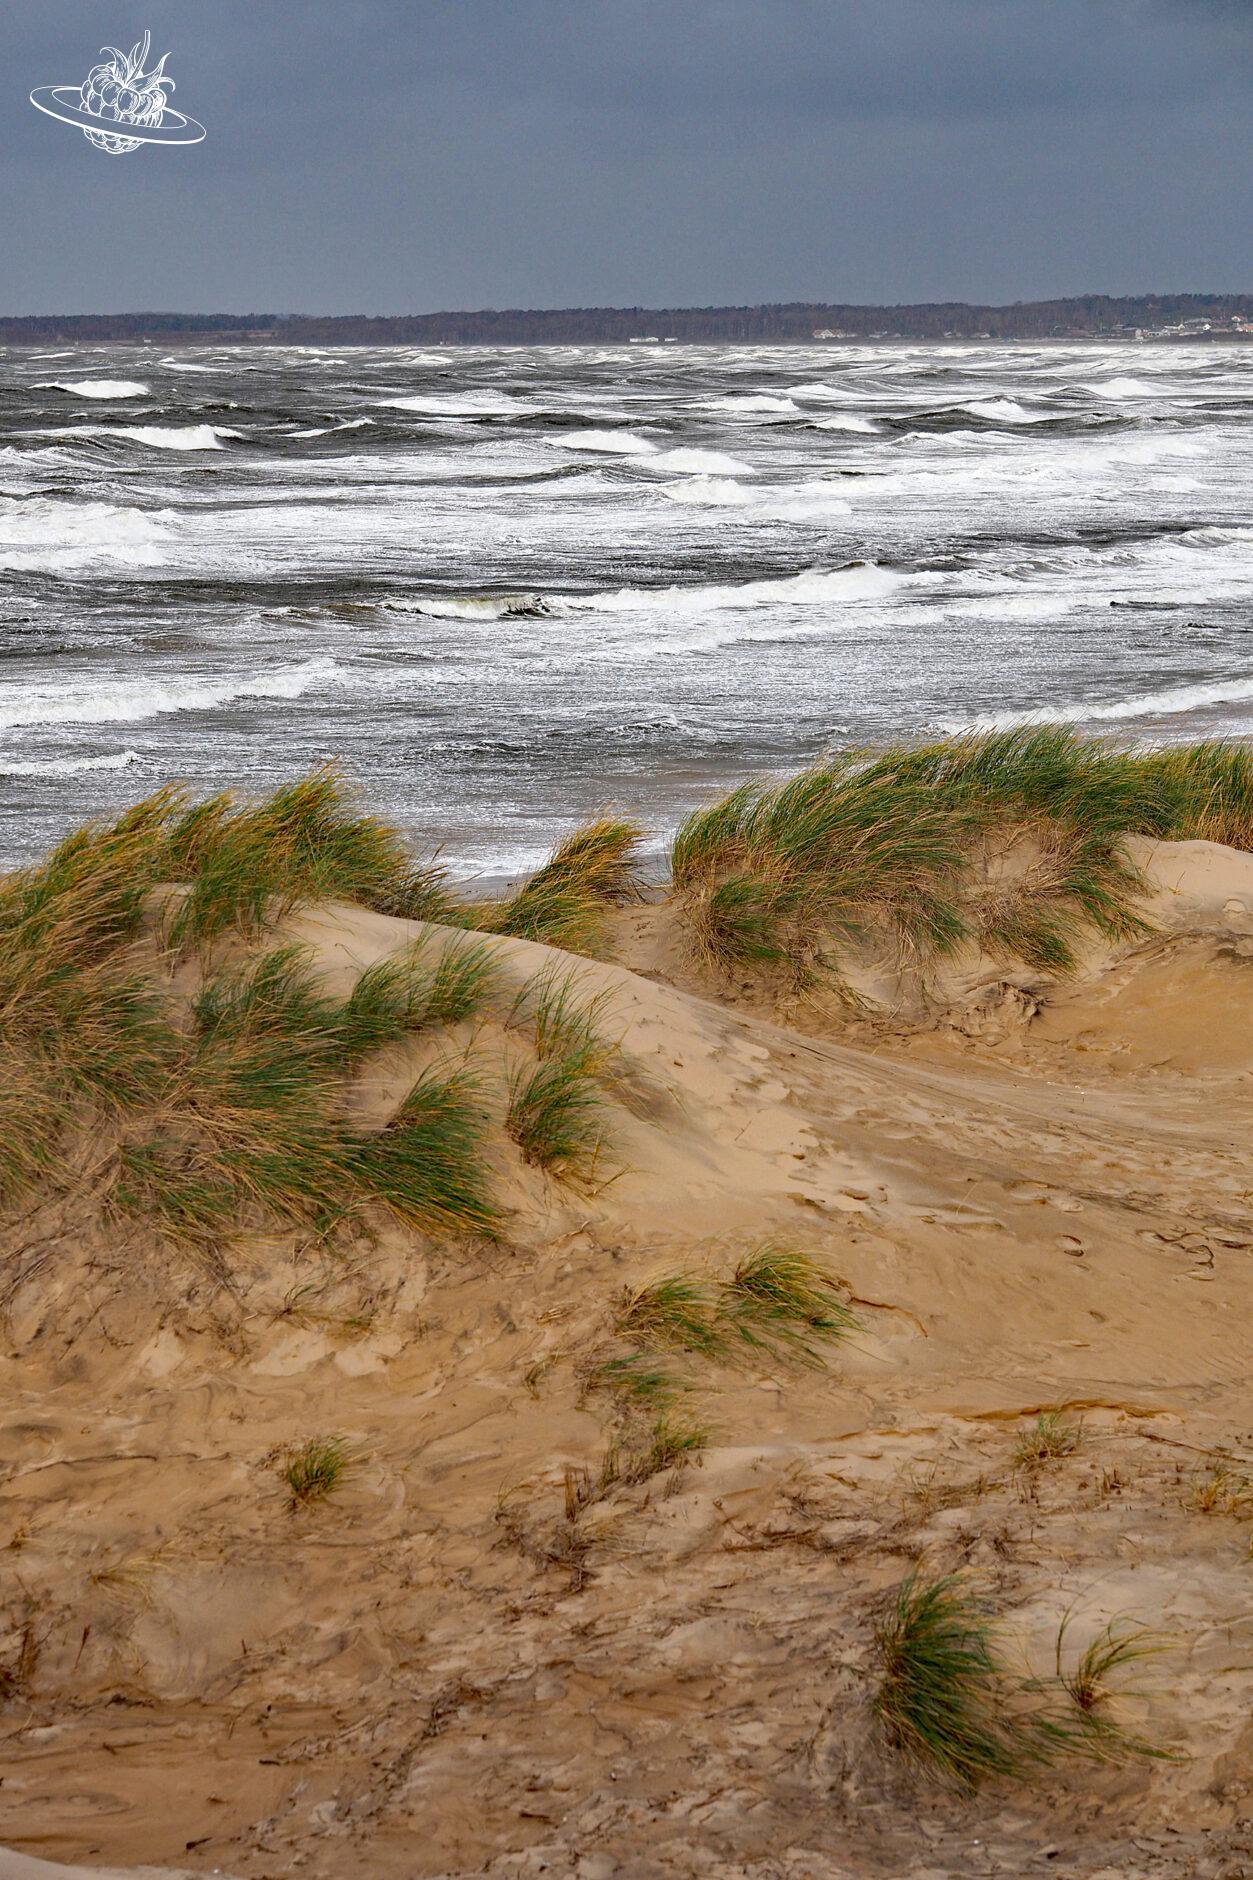 Stürmische See mit Sanddüne im Vordergrund